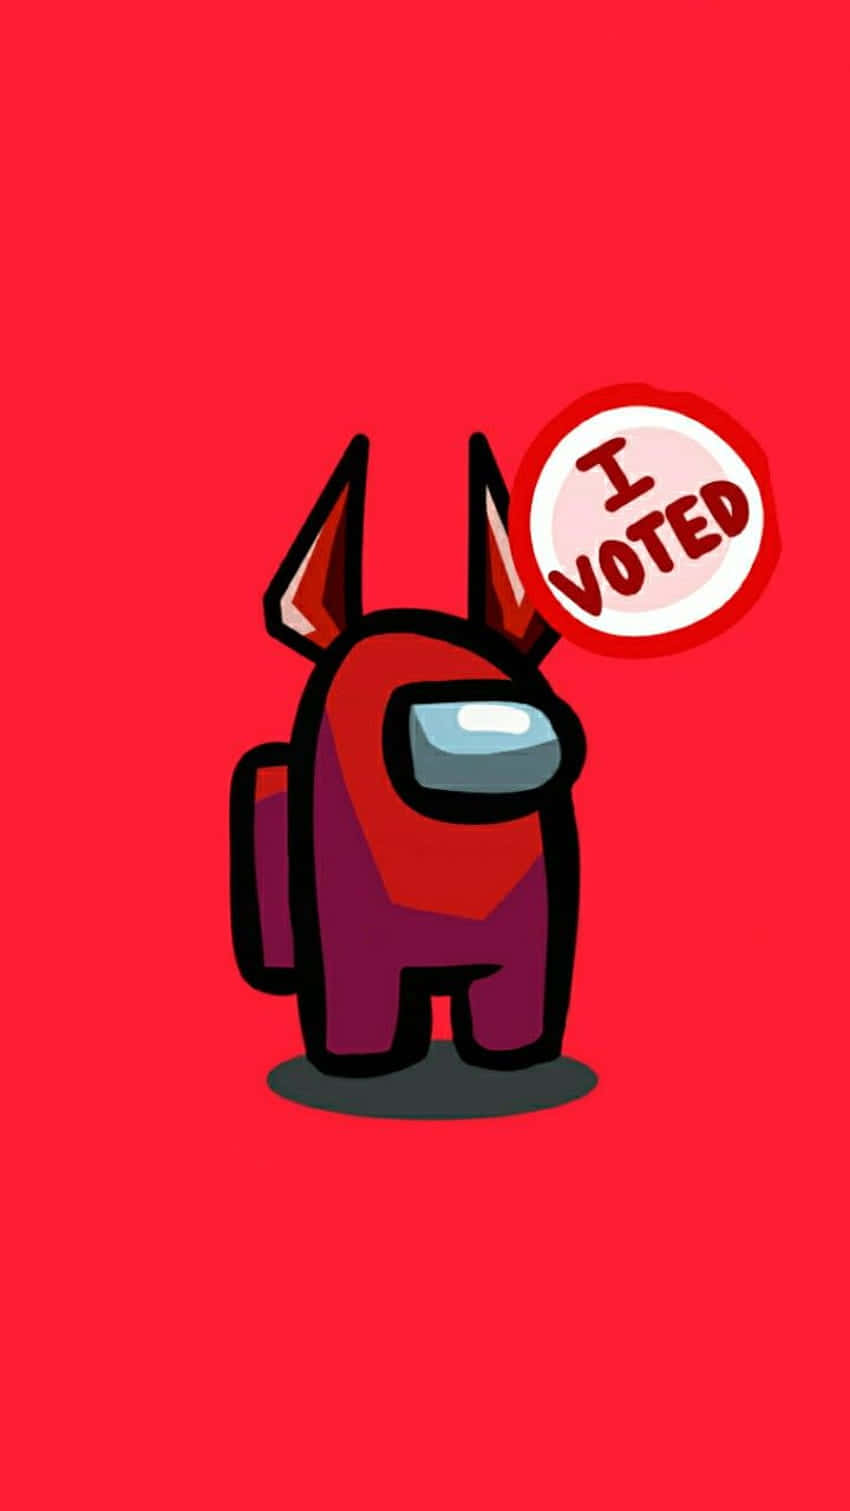 Unpersonaggio Dei Cartoni Animati Con Uno Sfondo Rosso E Un Segno Di Voto. Sfondo